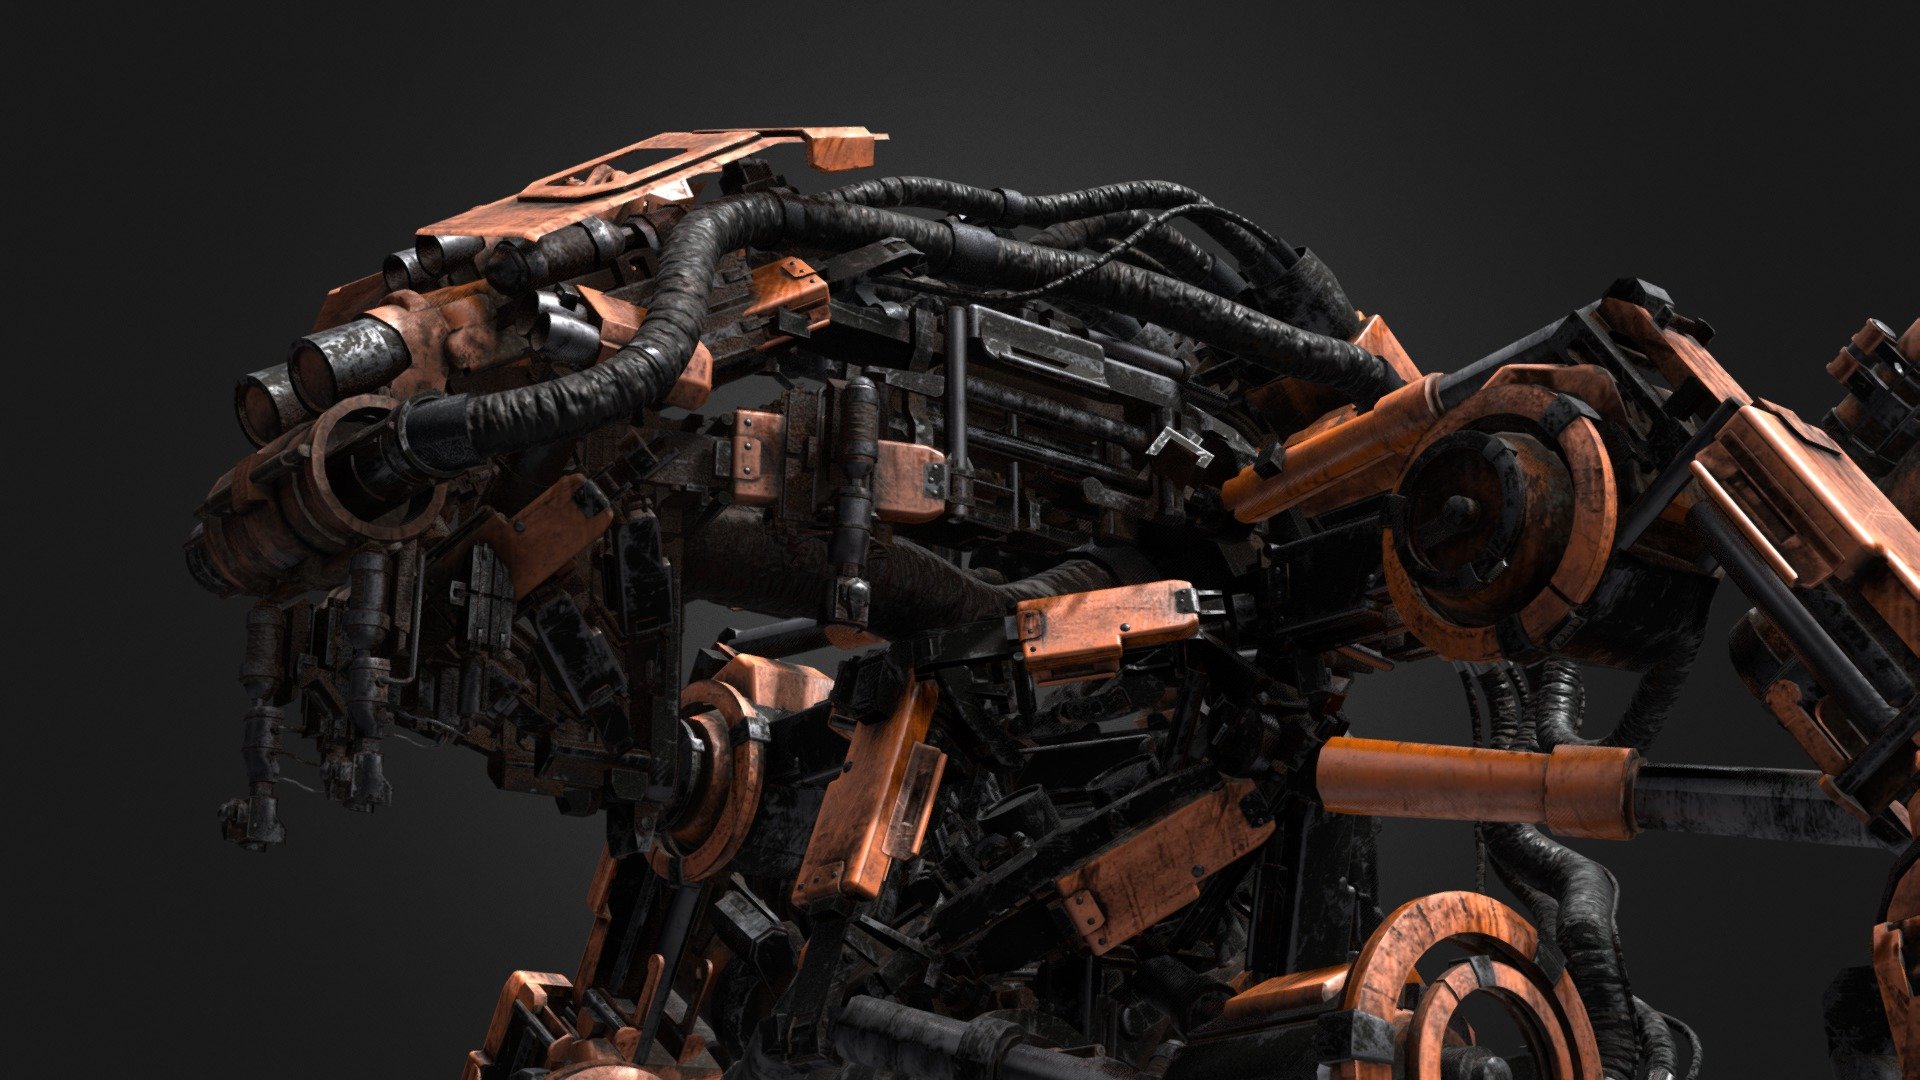 Pneaumatic Robot - 3D model by Daniel Magyar (@balmor3d) 3d model